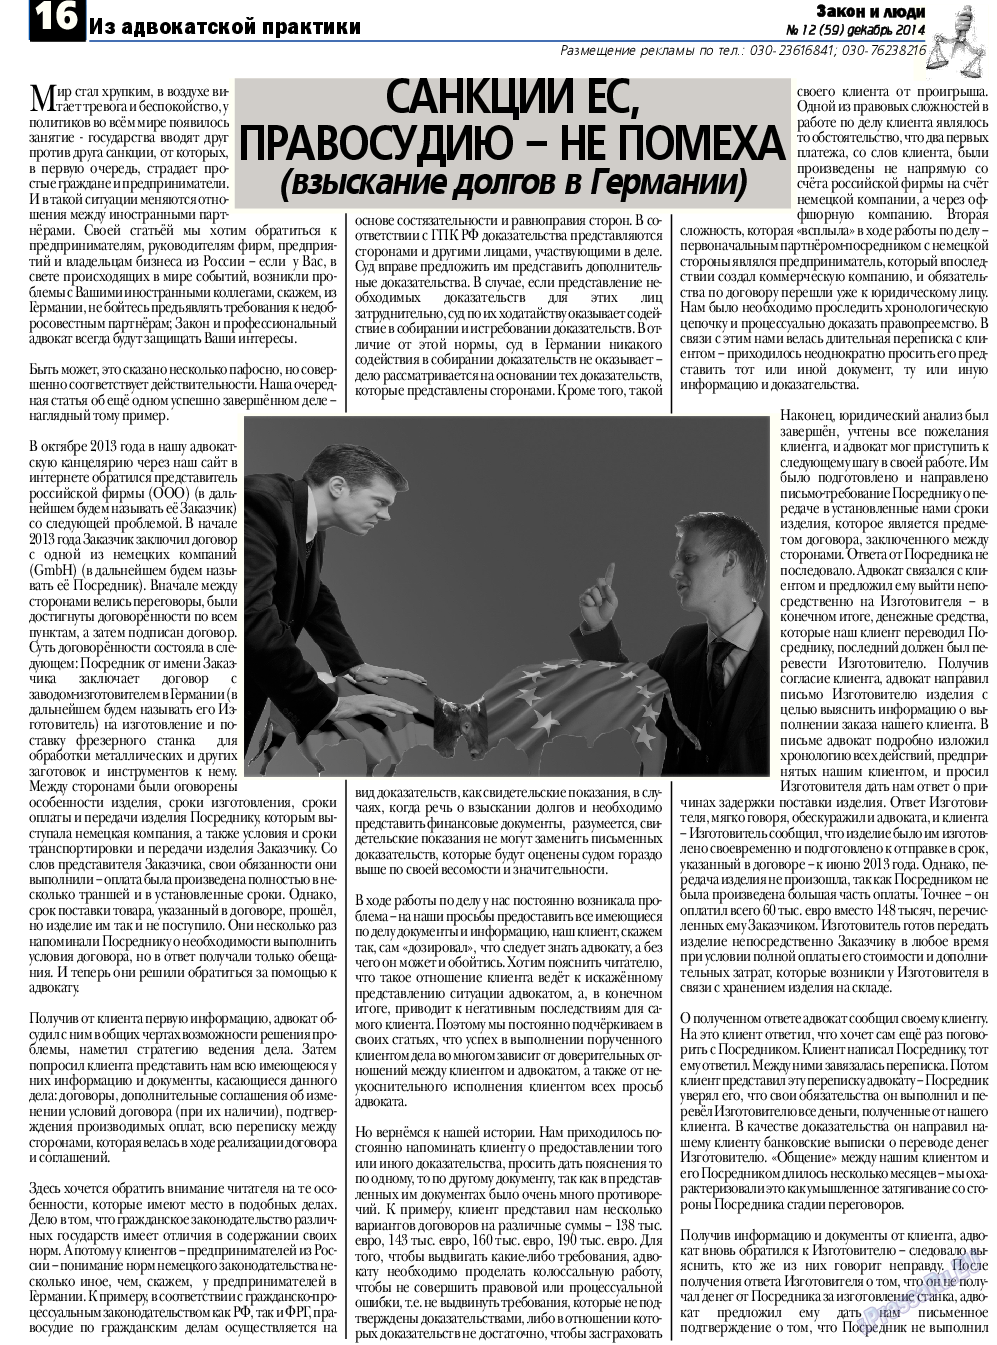 Закон и люди, газета. 2014 №12 стр.16